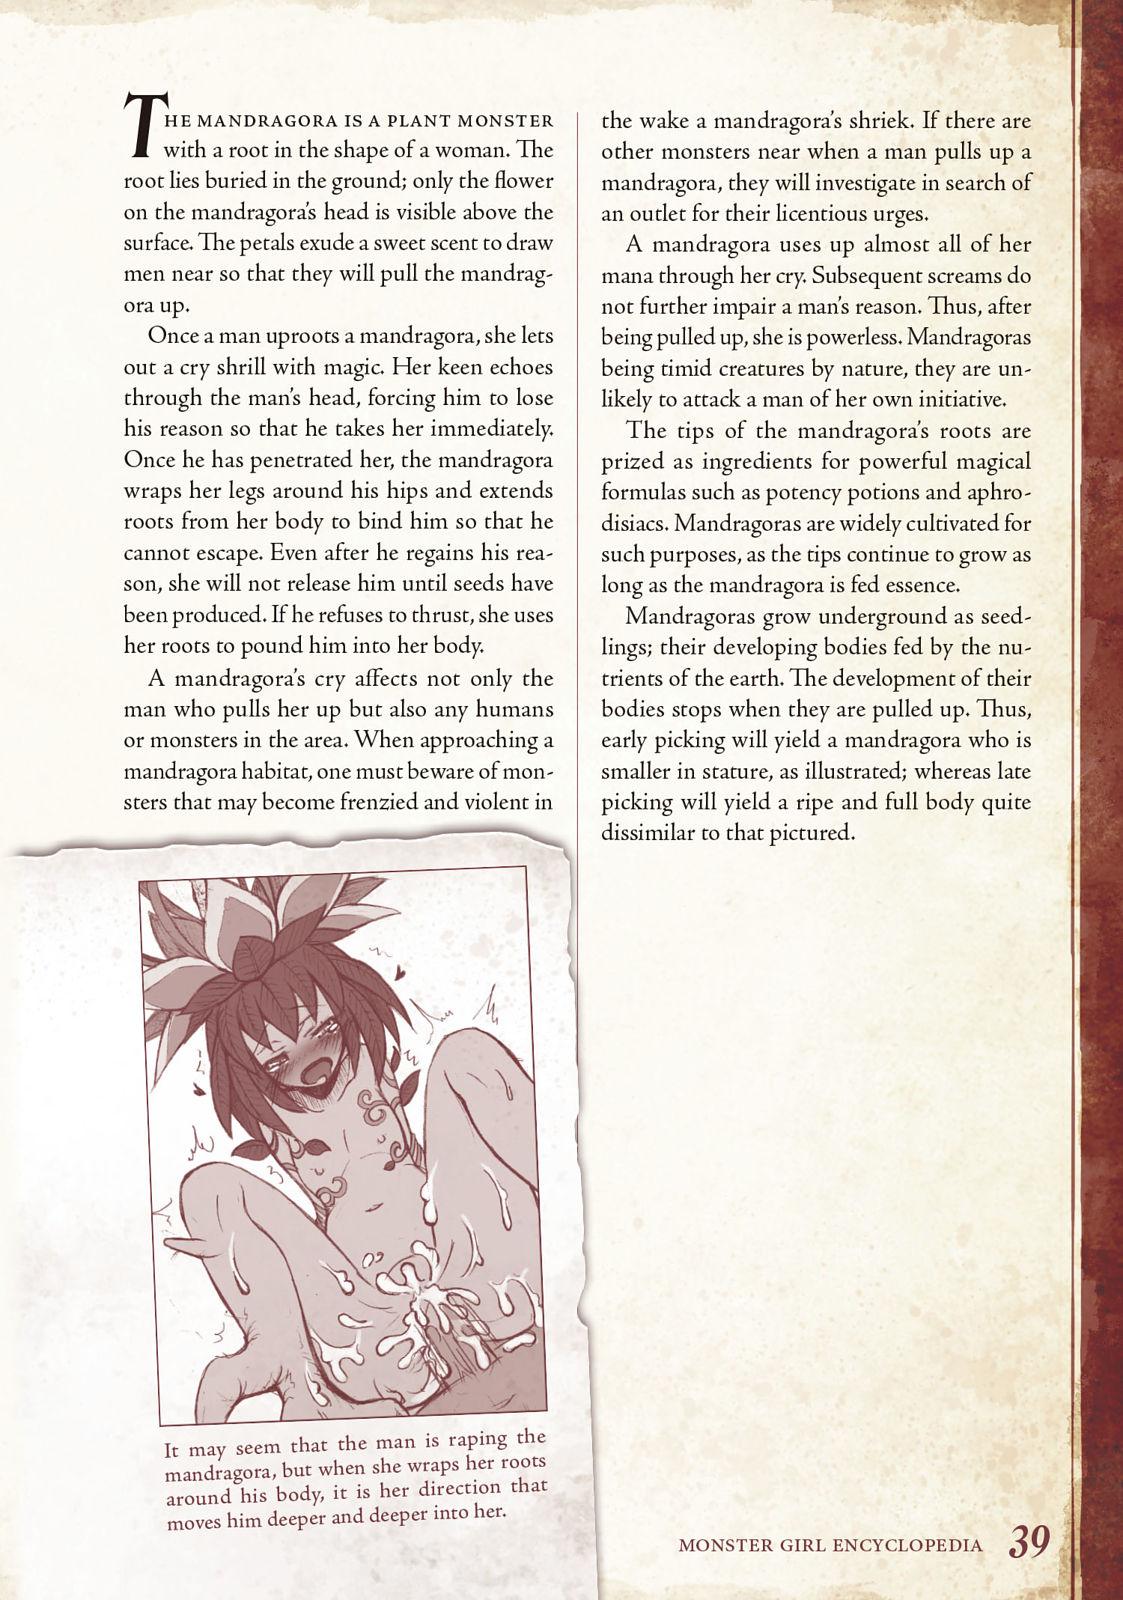 Monster Girl Encyclopedia Vol. 1 39